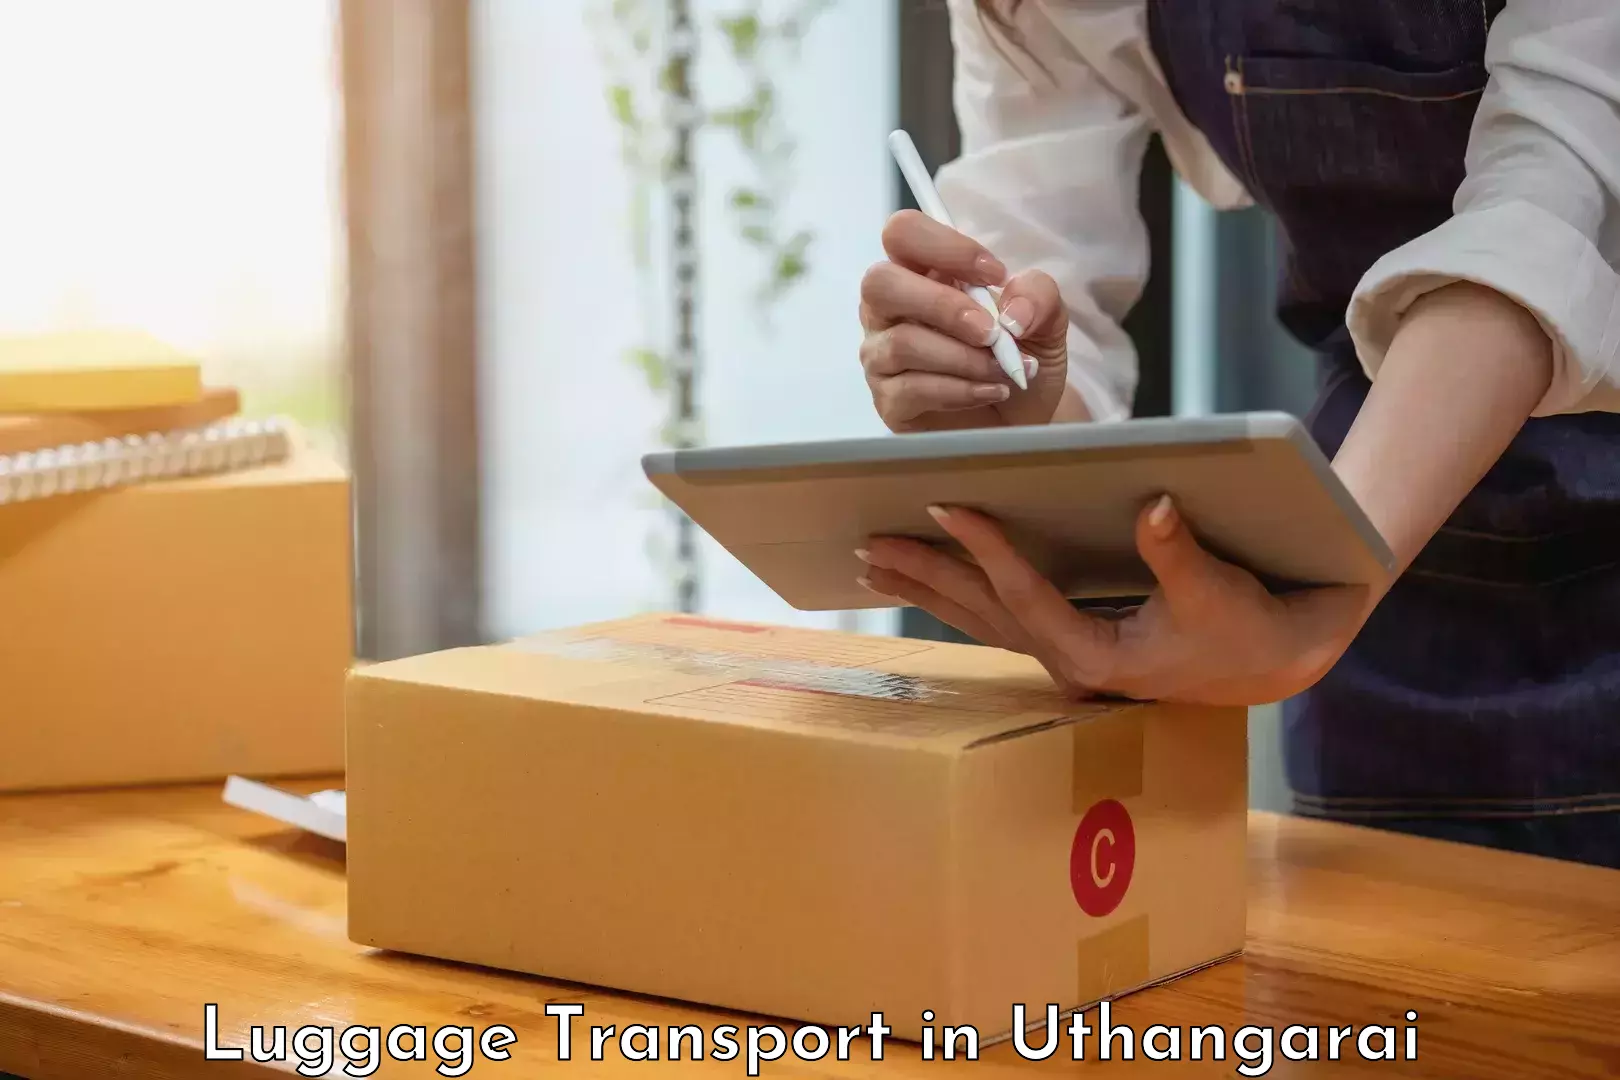 Urgent luggage shipment in Uthangarai